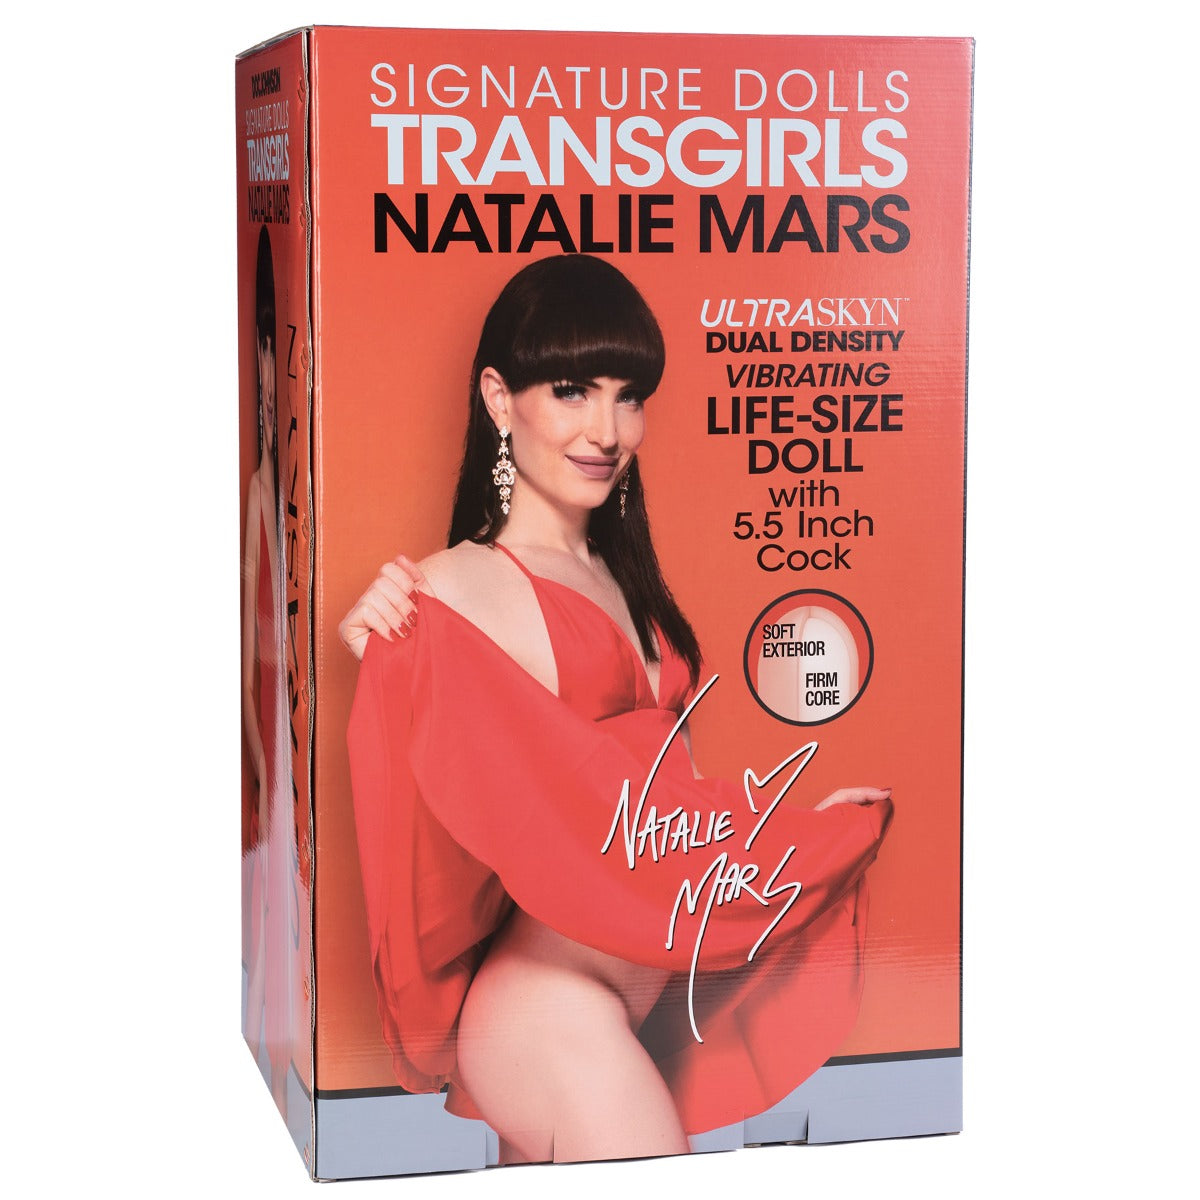 TransGirl Doll - Natalie Mars